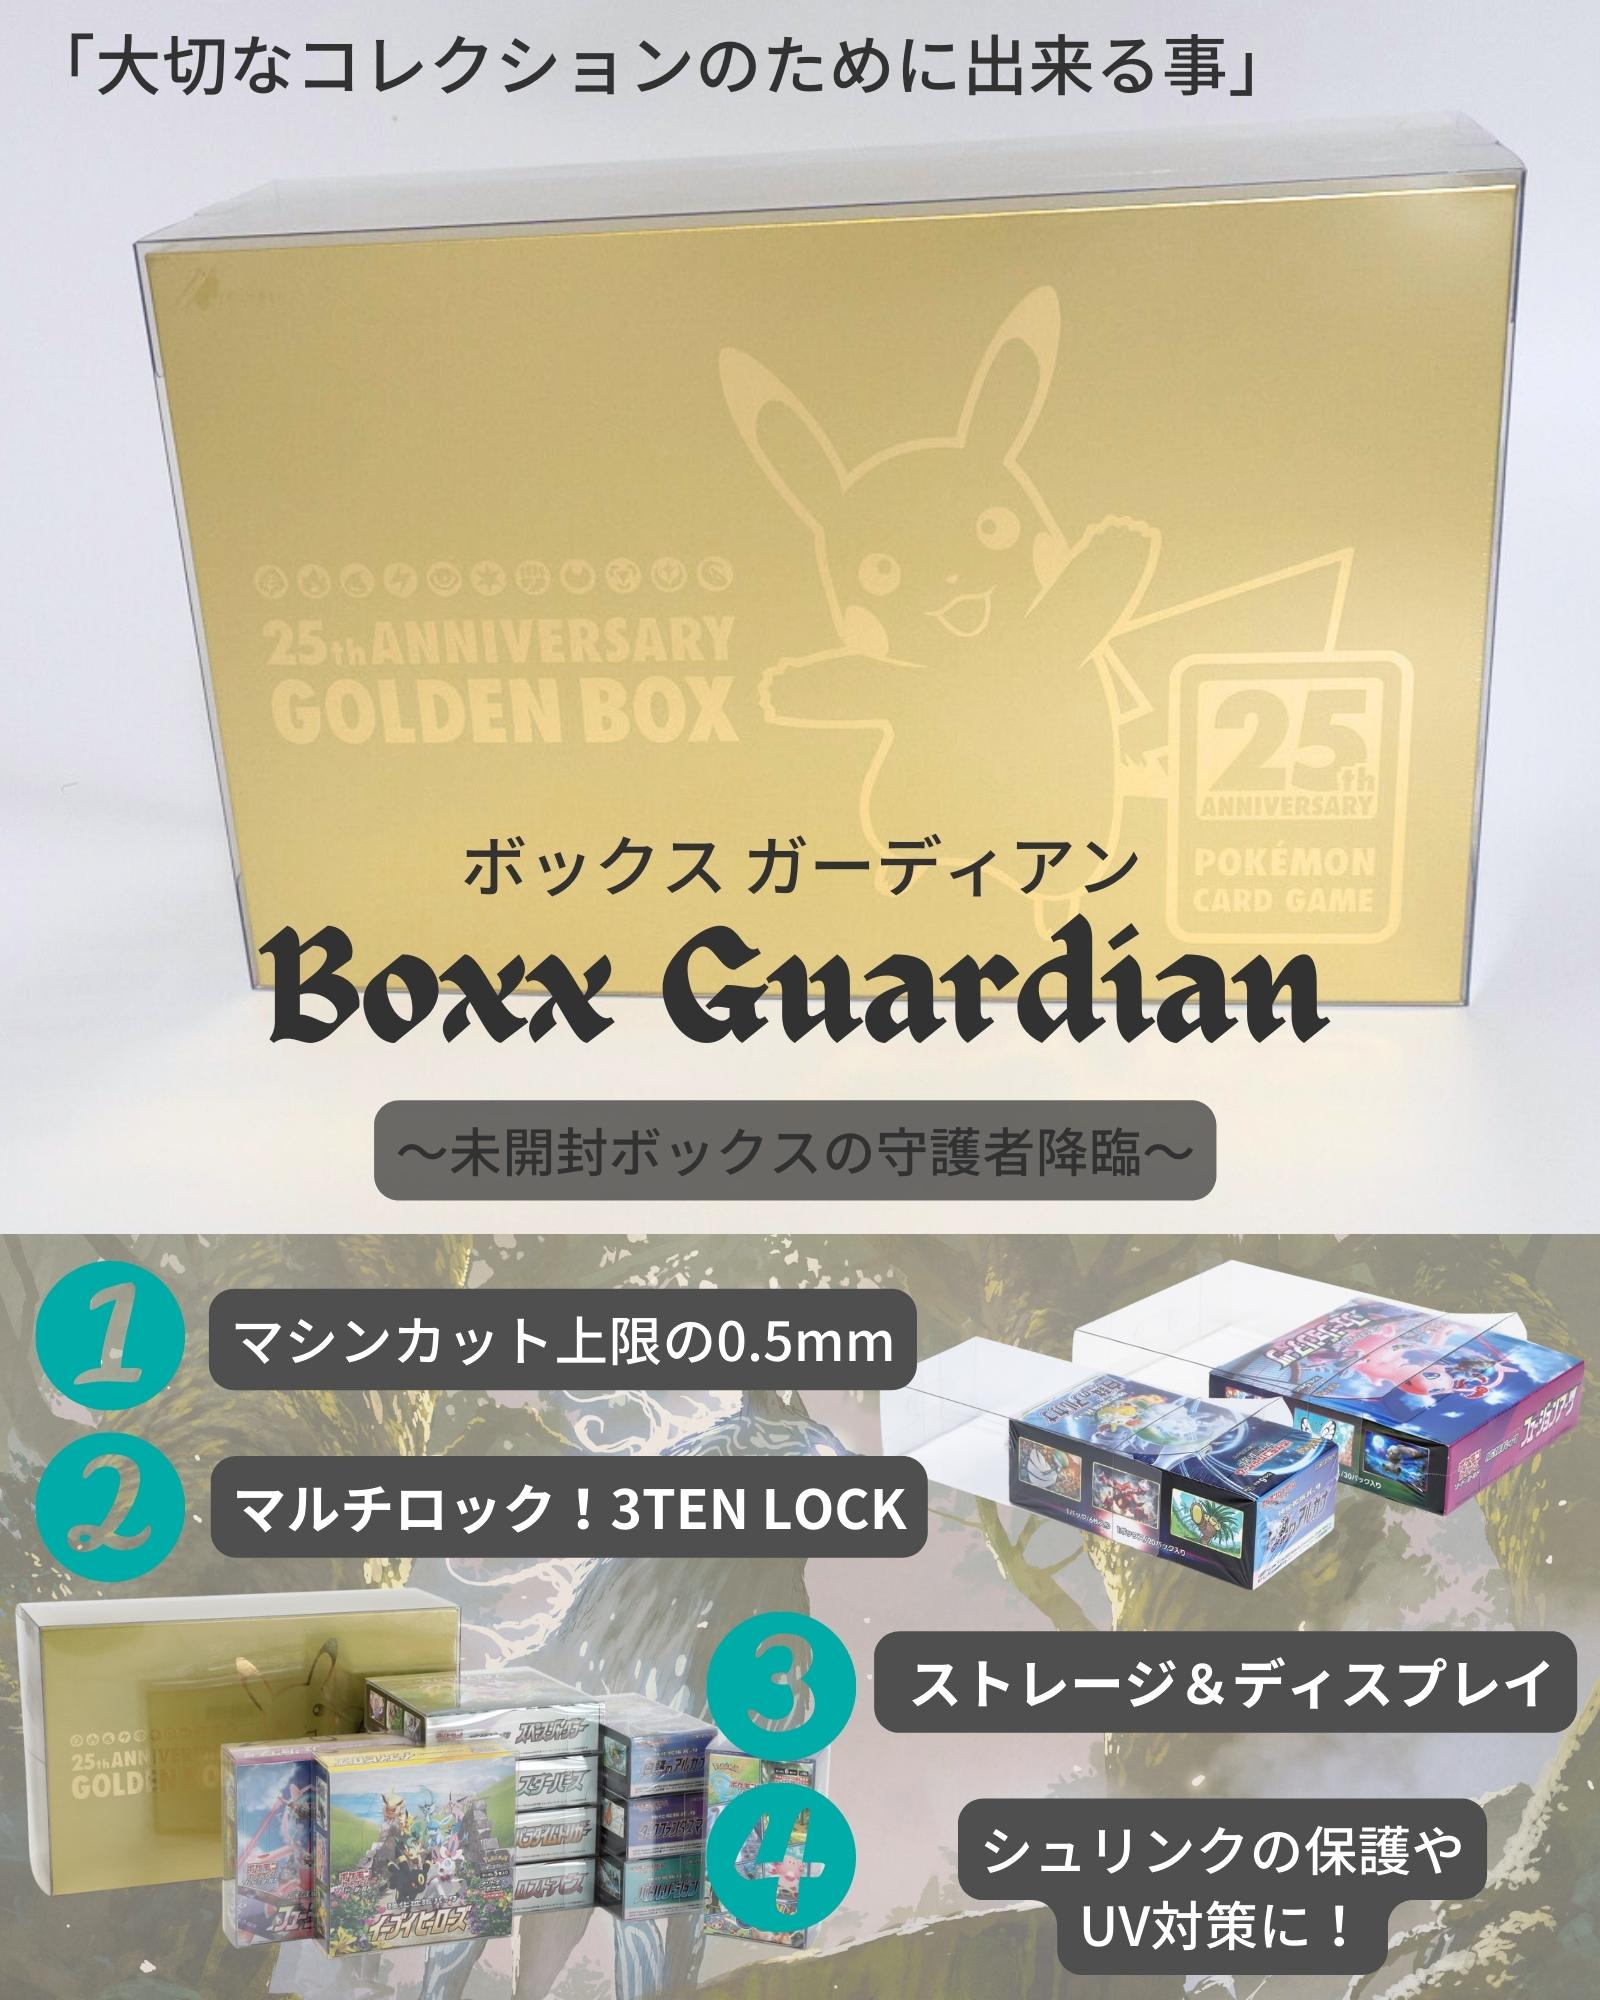 Box/デッキ/パックポケモン25thANNIVERSARY GOLDEN BOX/ポケモン切手BOX